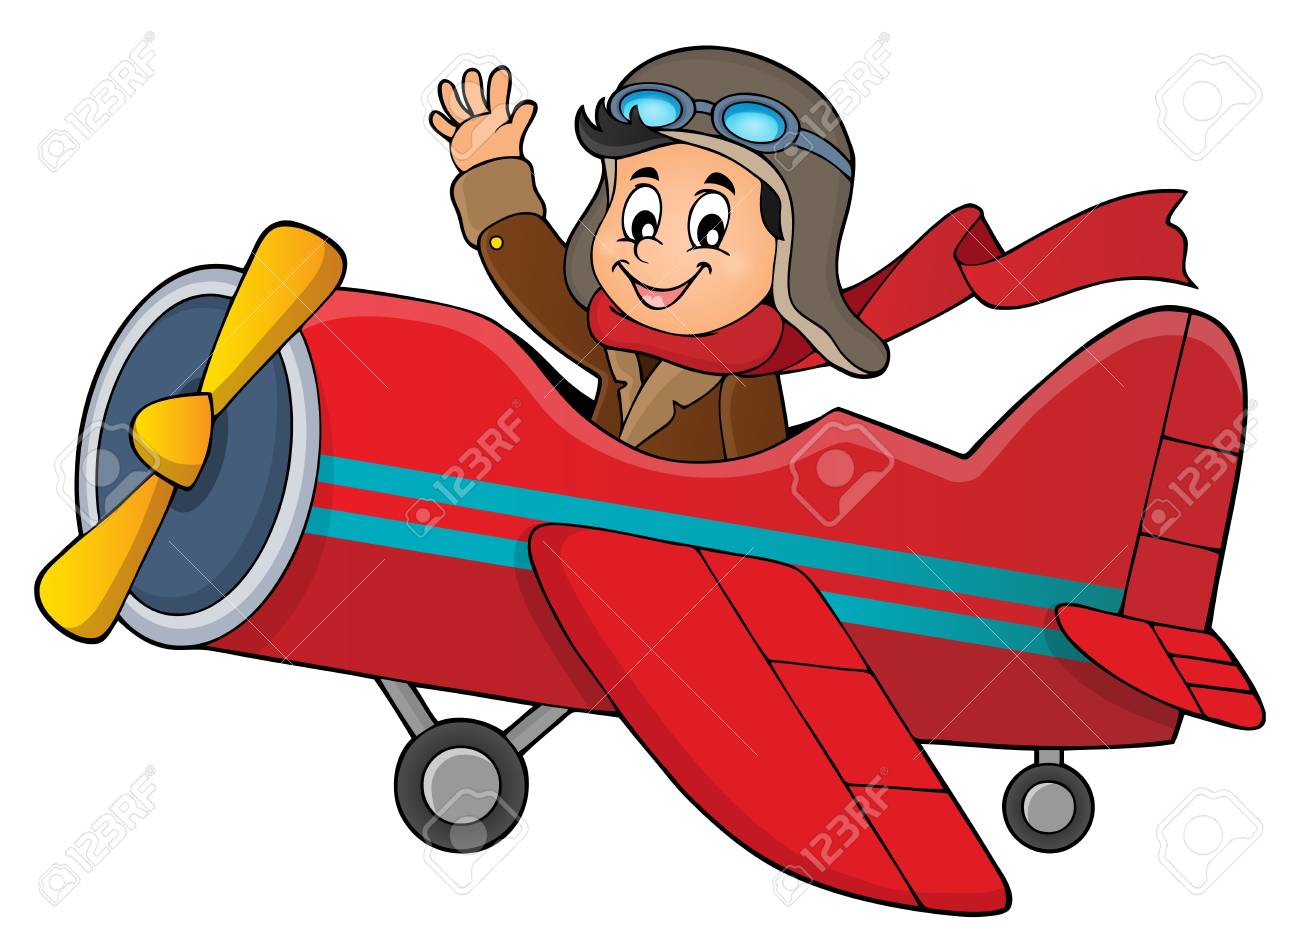 Картинка пилот для детей в детском саду